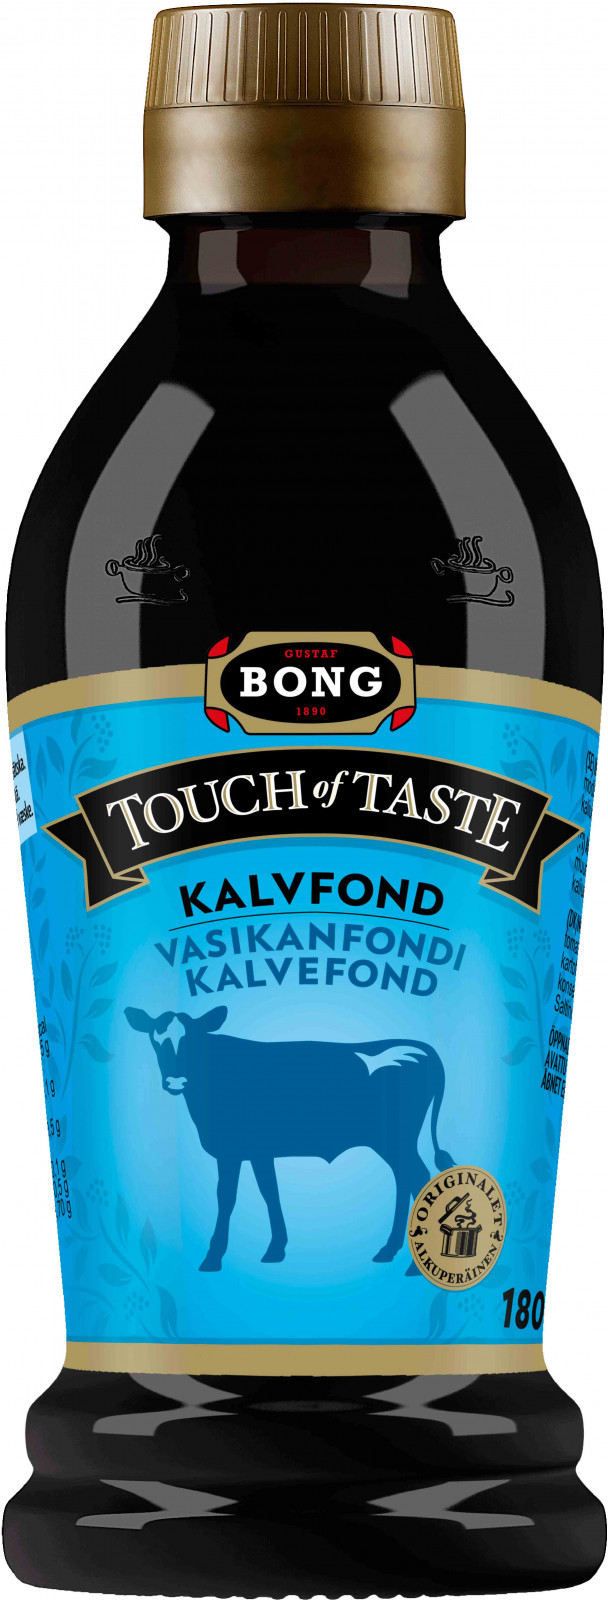 Bong touch of taste Tuottet Vasikanfondi